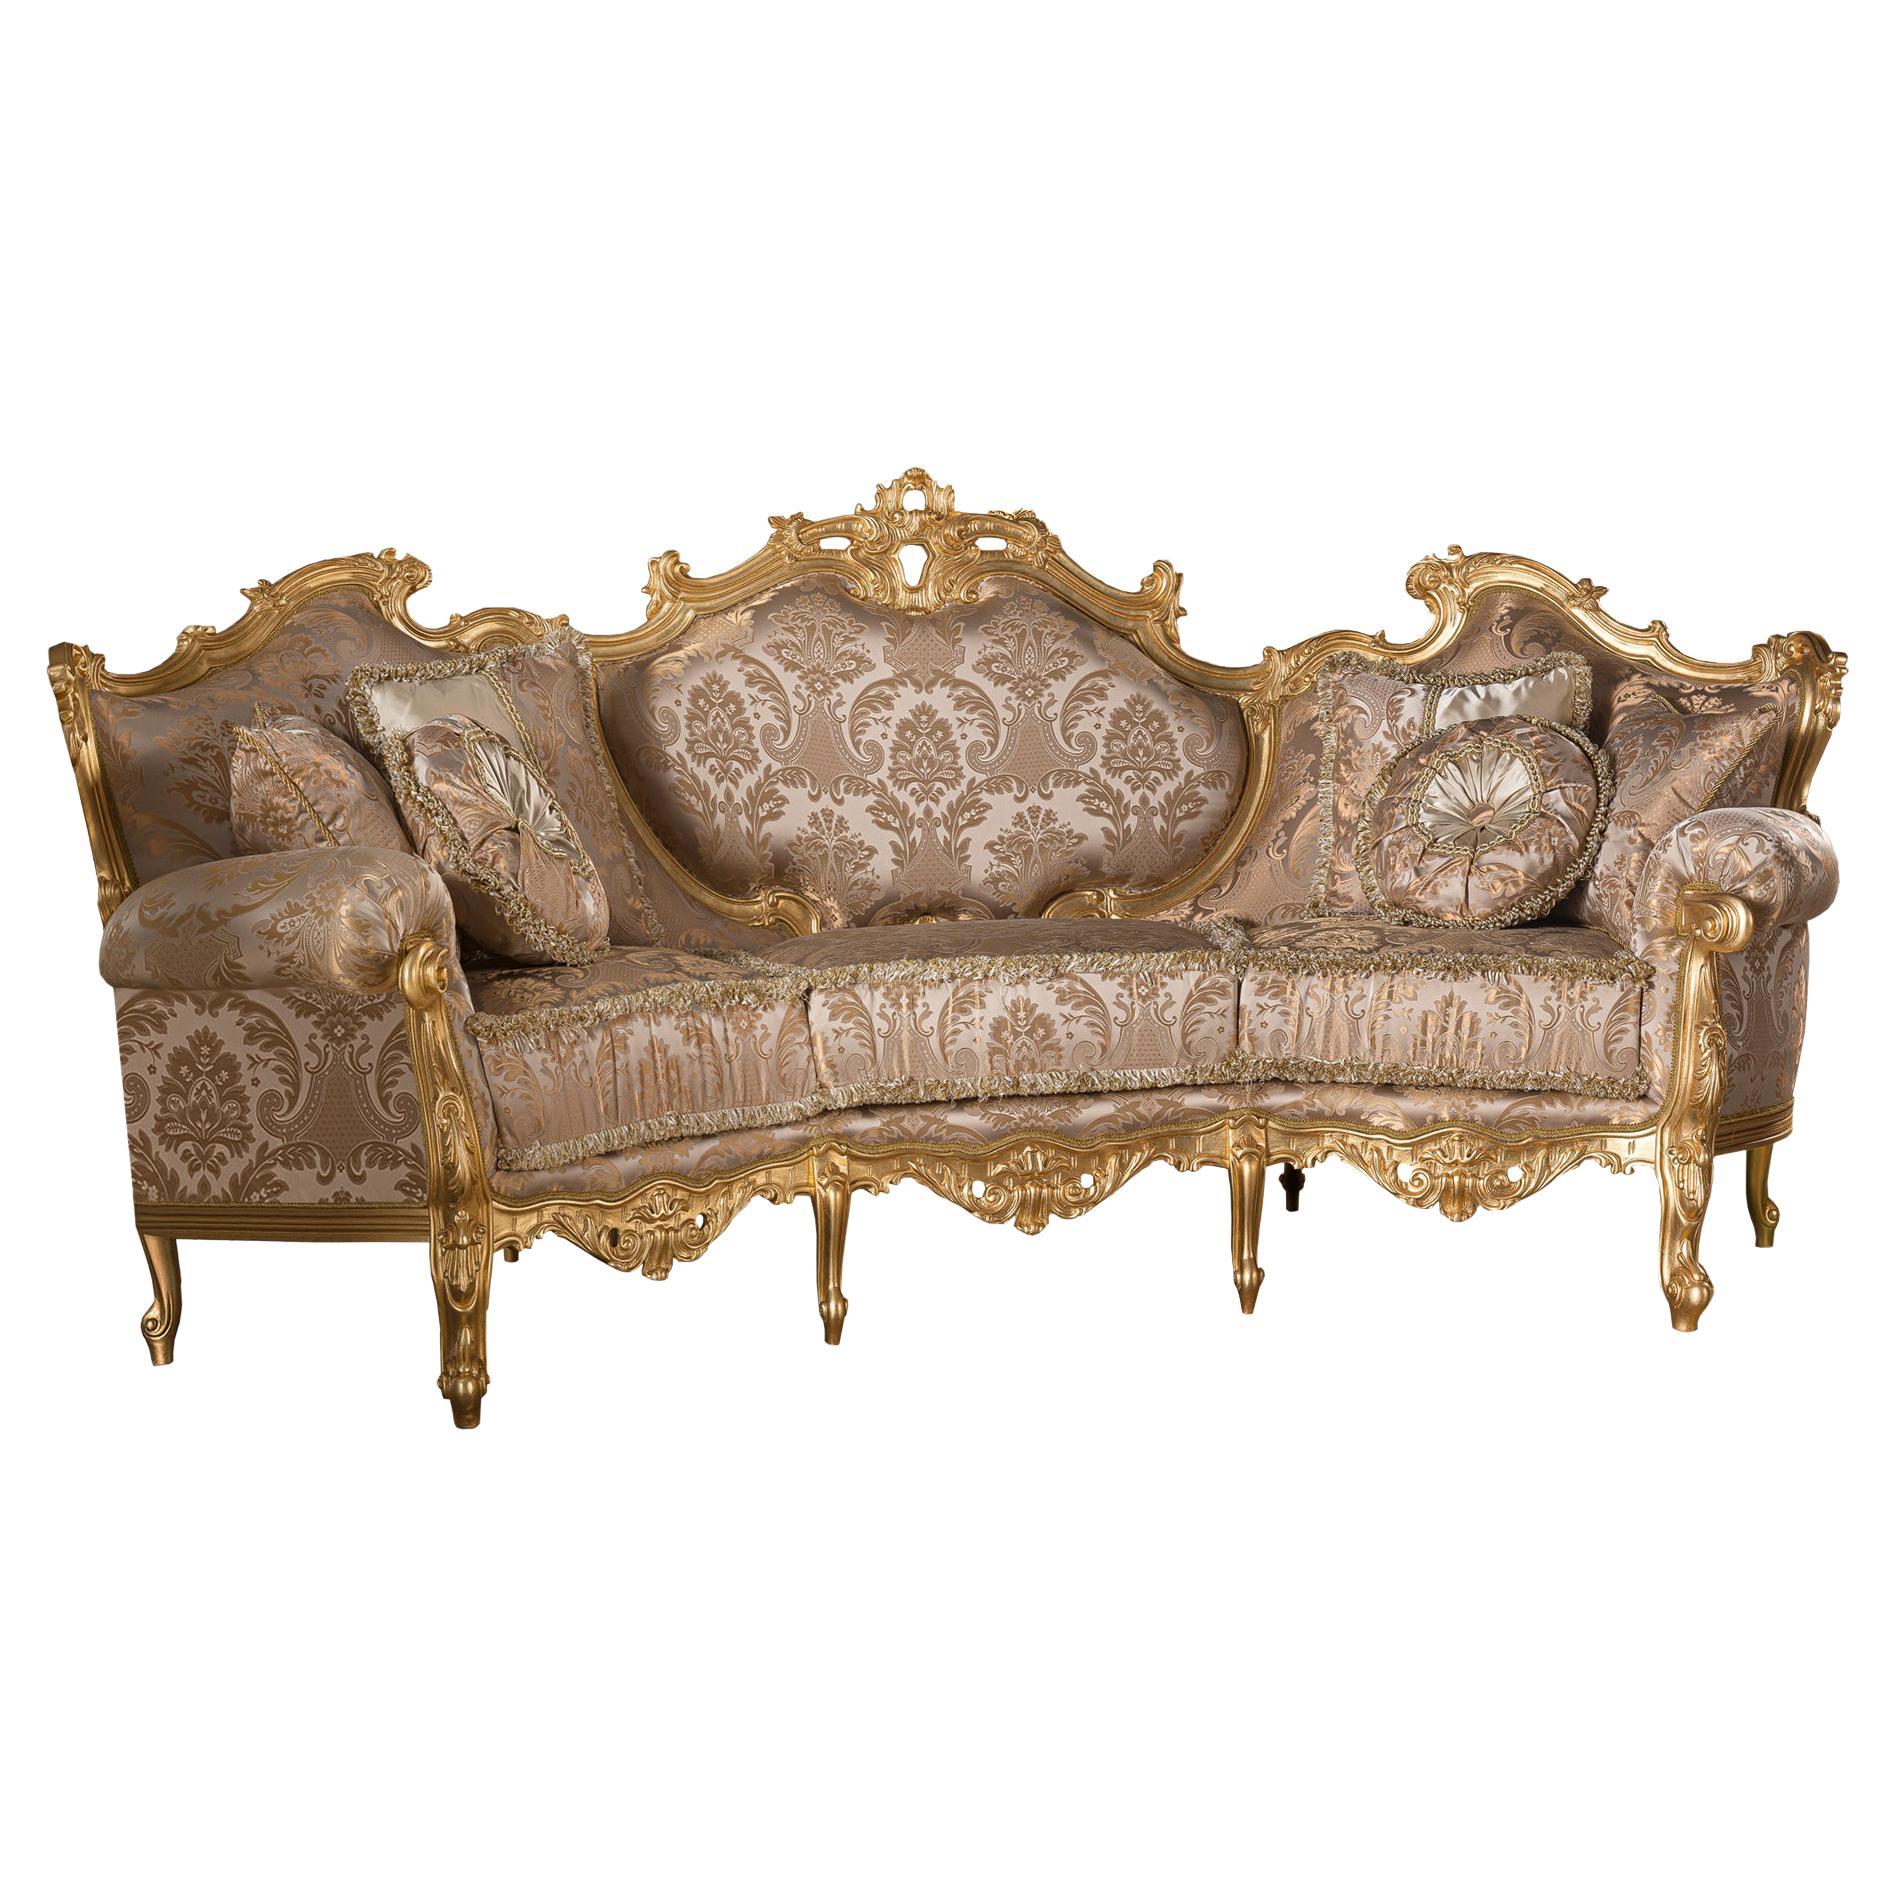 Italienisches dreisitziges Deluxe-Sofa in hervorragender Qualität aus massivem Holz mit Blattgold-Dekor